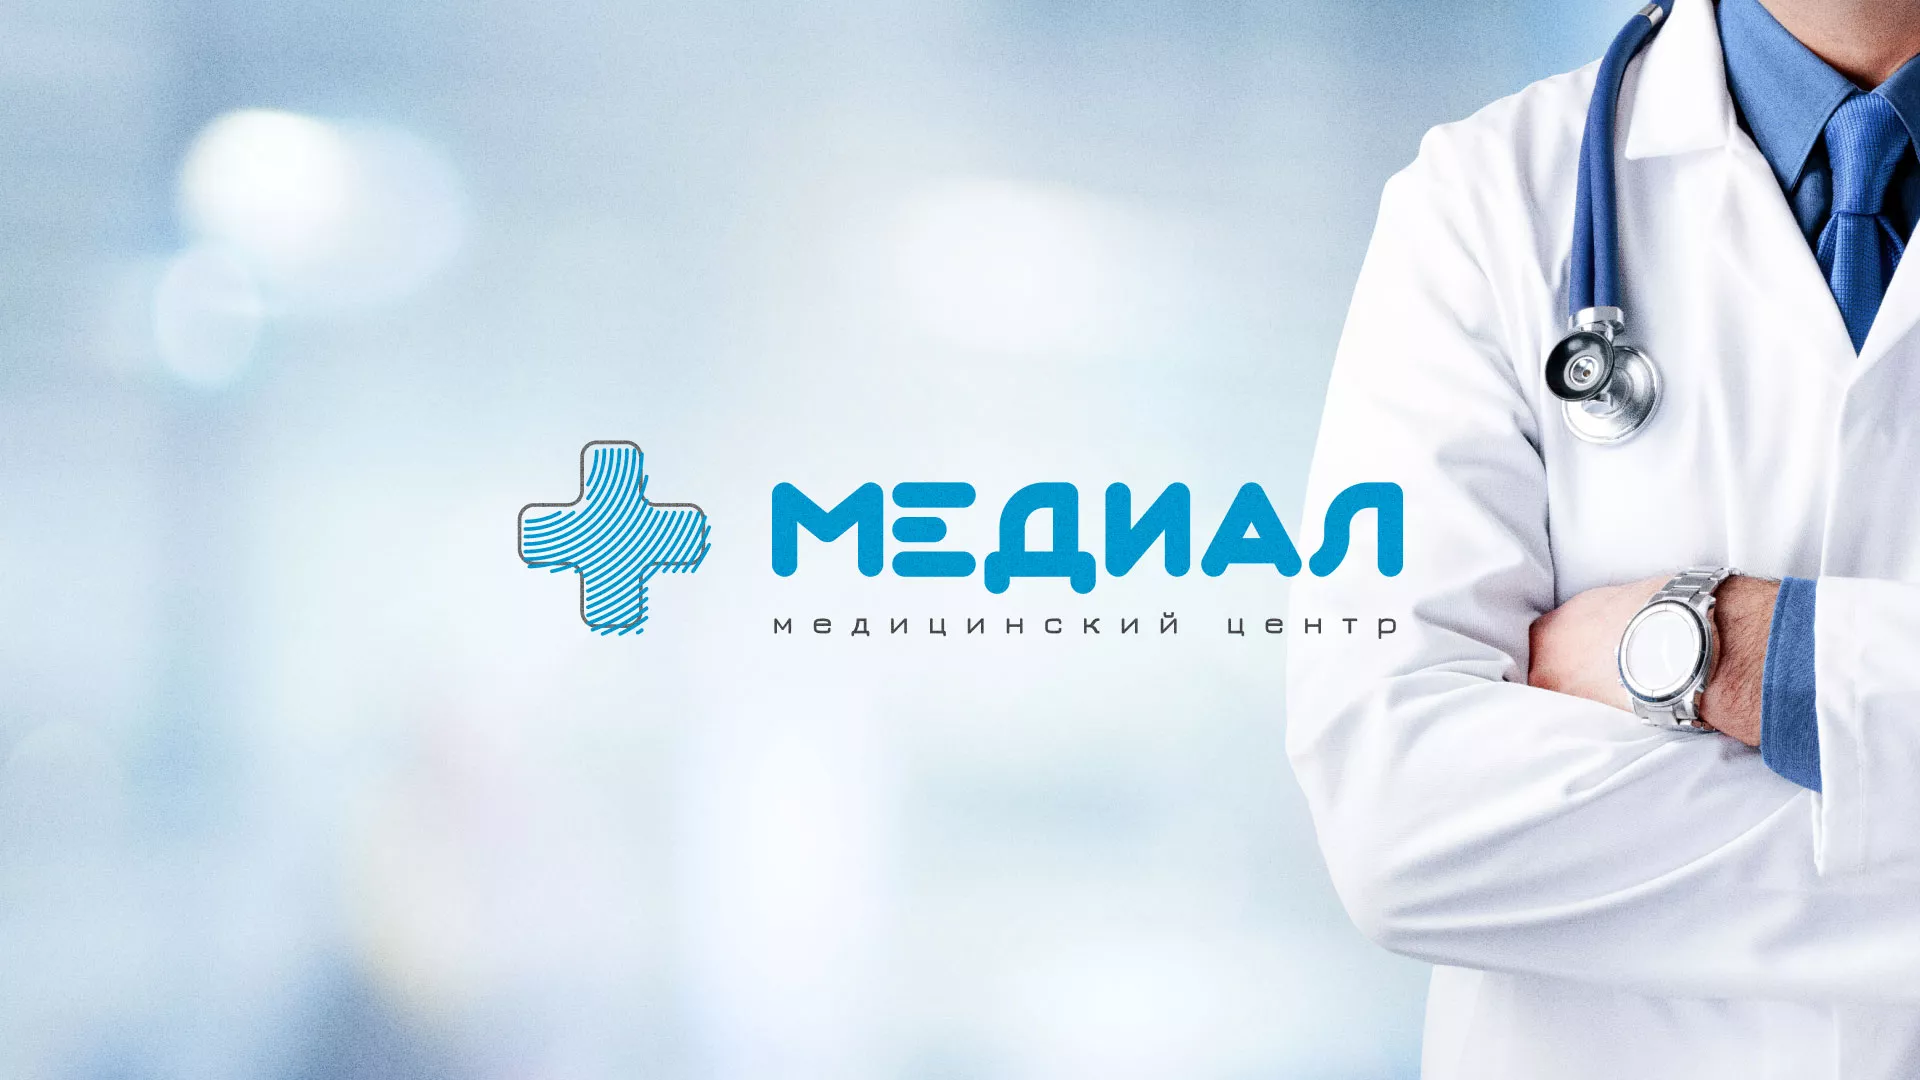 Создание сайта для медицинского центра «Медиал» в Щелково